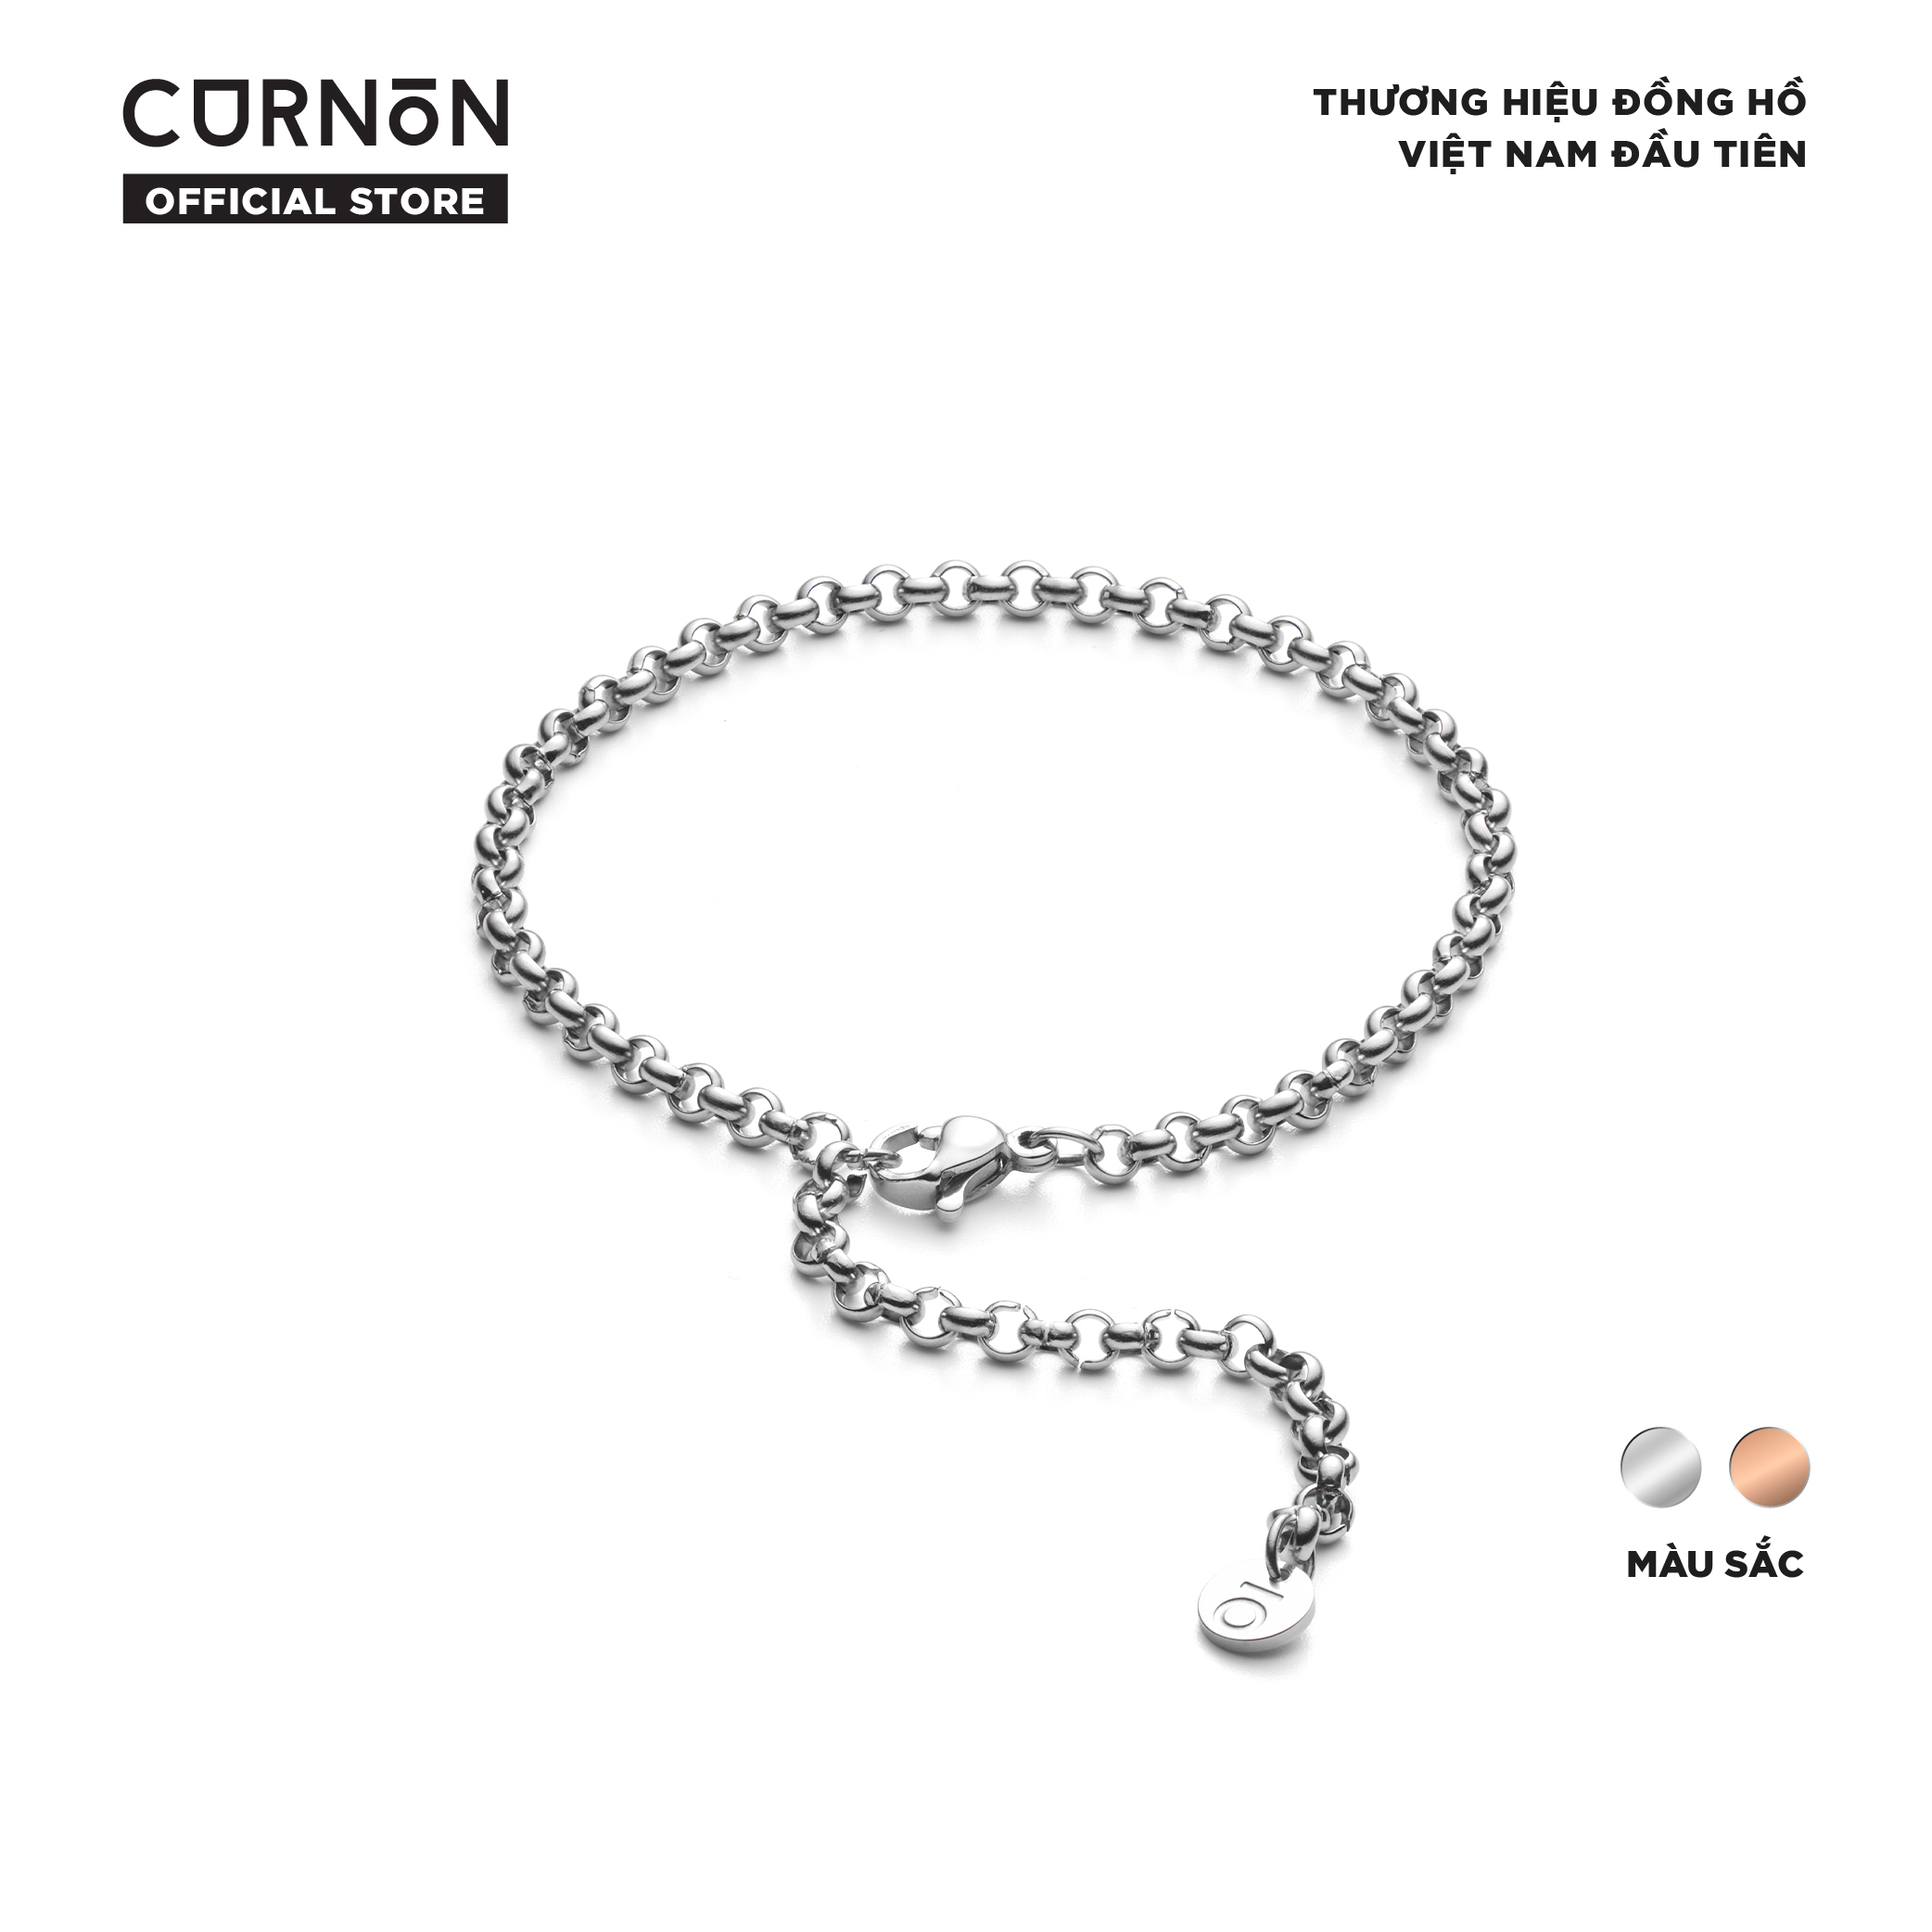 Vòng tay nữ Curnon Sierra Bracelet - trang sức, phụ kiện thời trang nữ, thiết kế basic, thanh lịch thumbnail